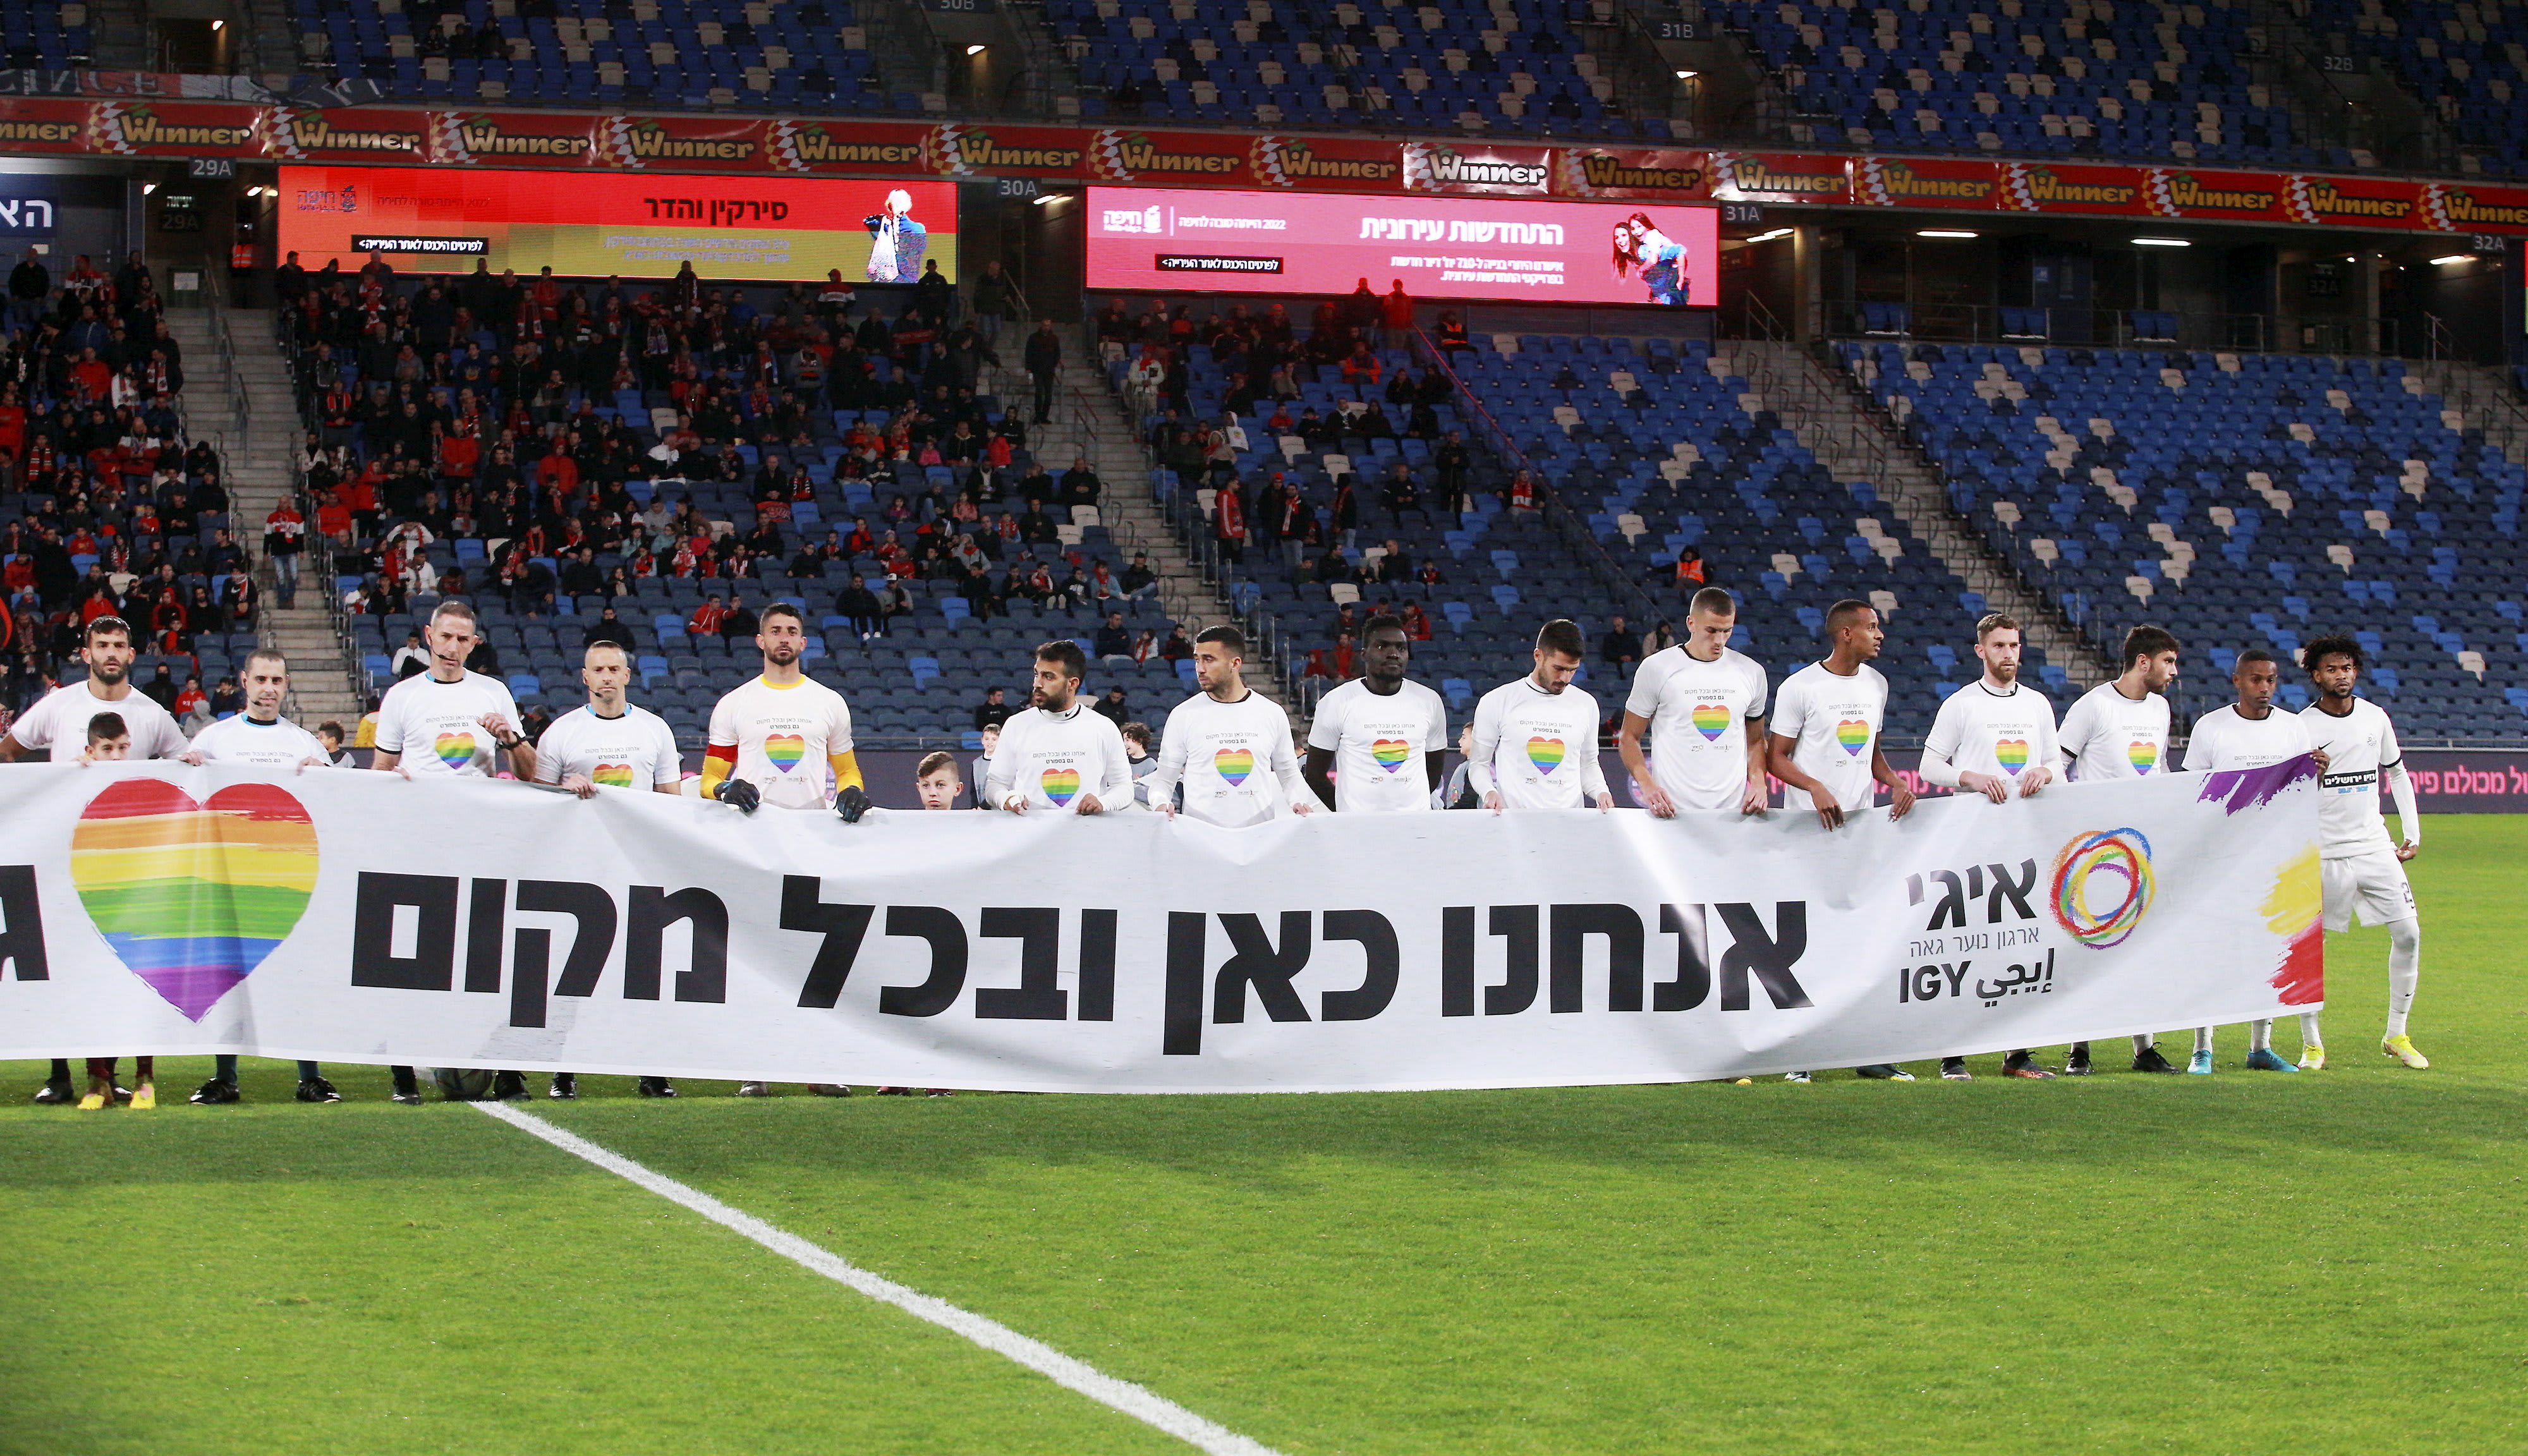 שחקני מ.ס. אשדוד עם חולצות עם דגל הגאווה, ארגון איגי